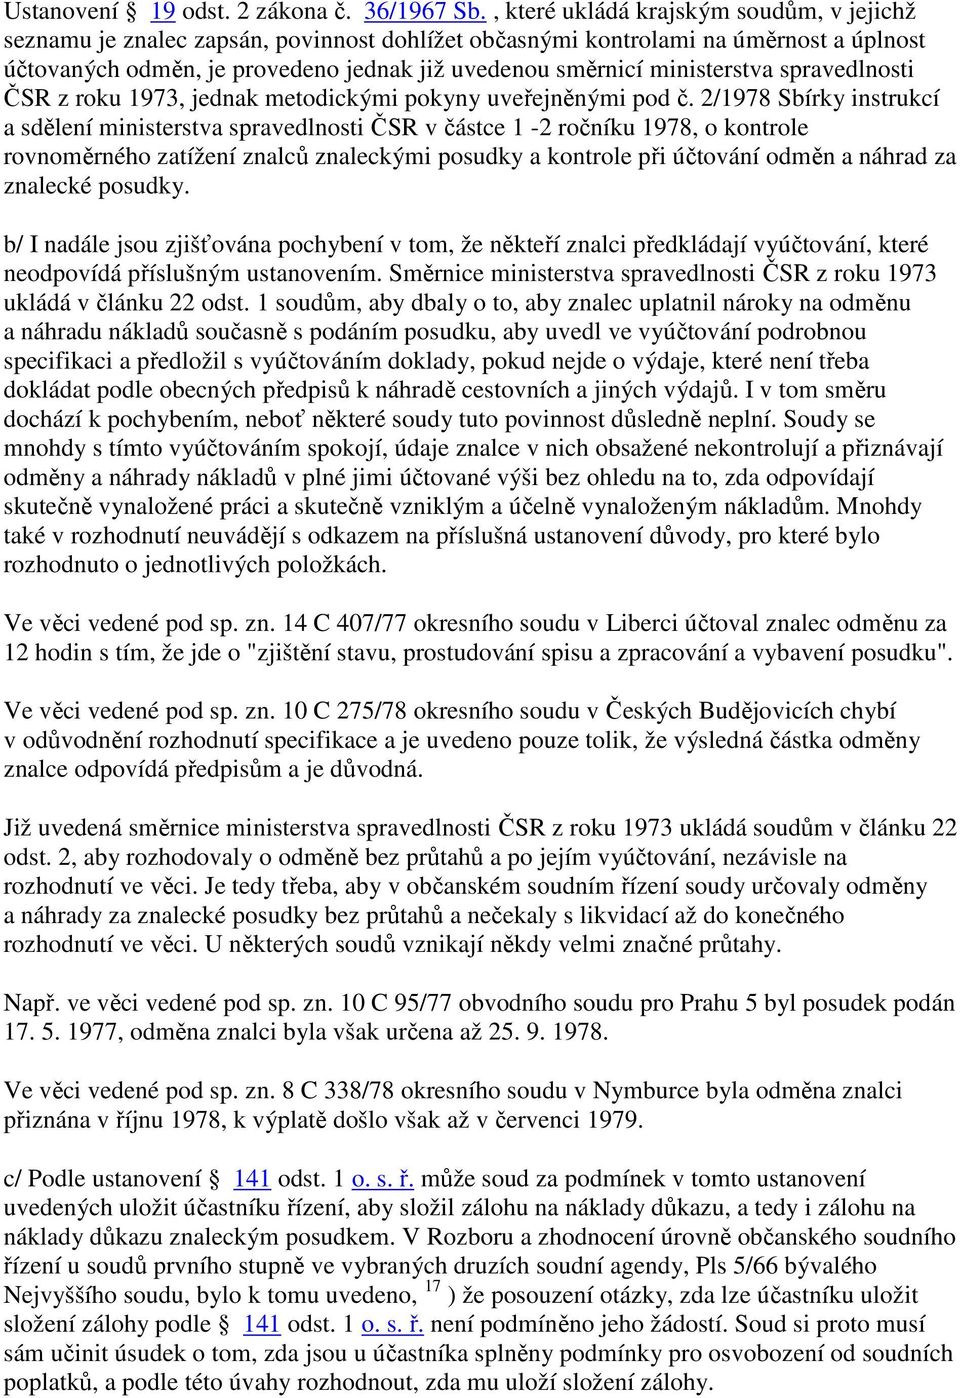 ministerstva spravedlnosti ČSR z roku 1973, jednak metodickými pokyny uveřejněnými pod č.